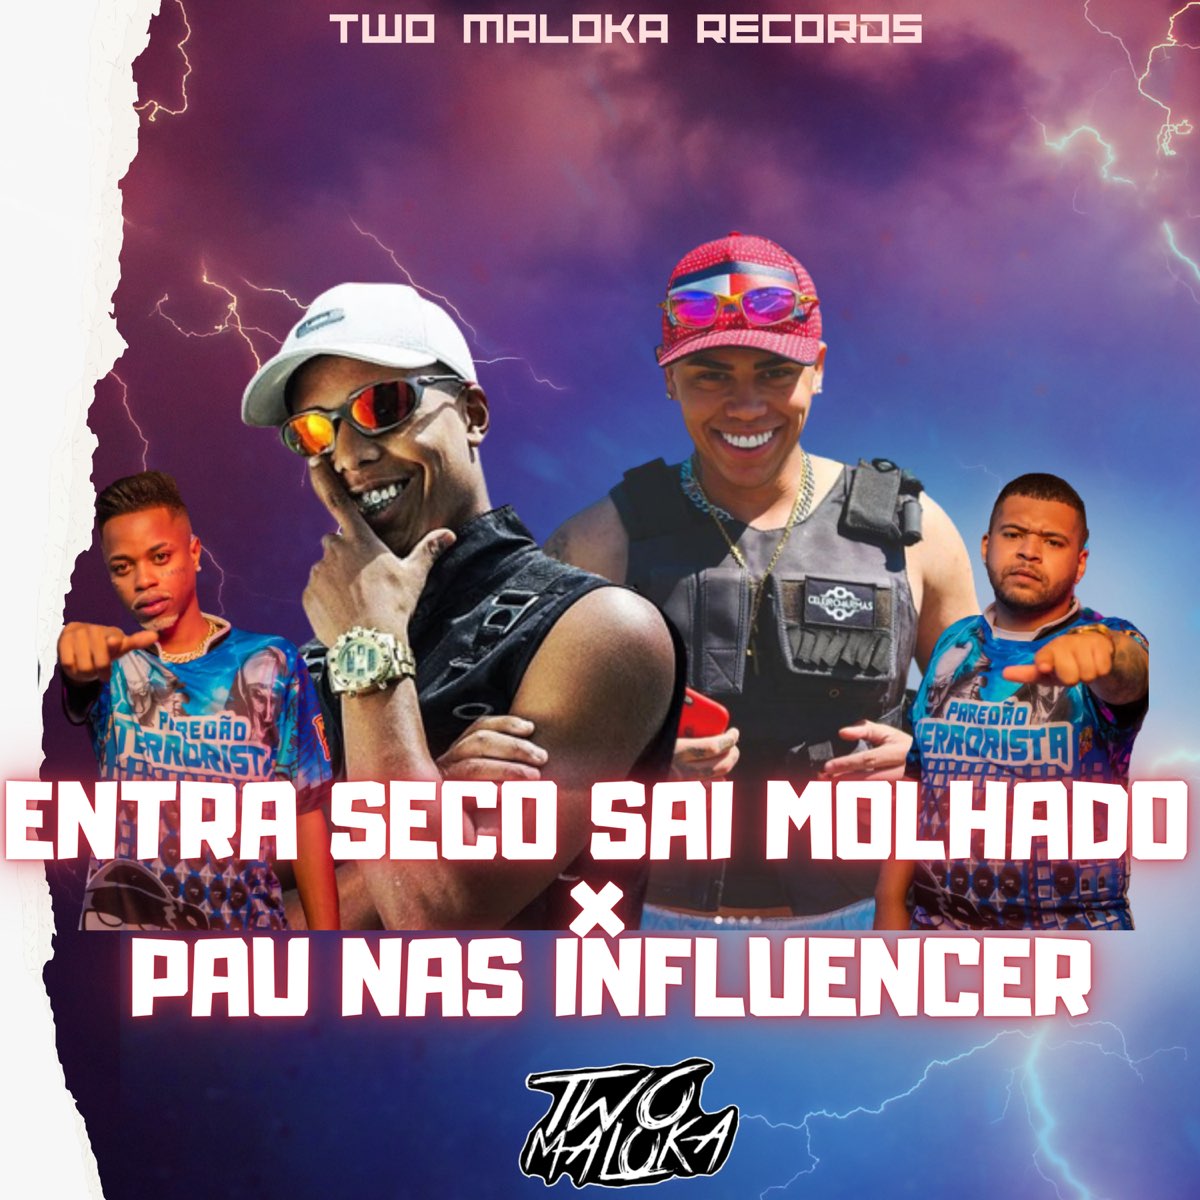 ‎entra Seco Sai Molhado X Pau Nas Influencer Single By Two Maloka Mc Lobinho And Mc Danflin On